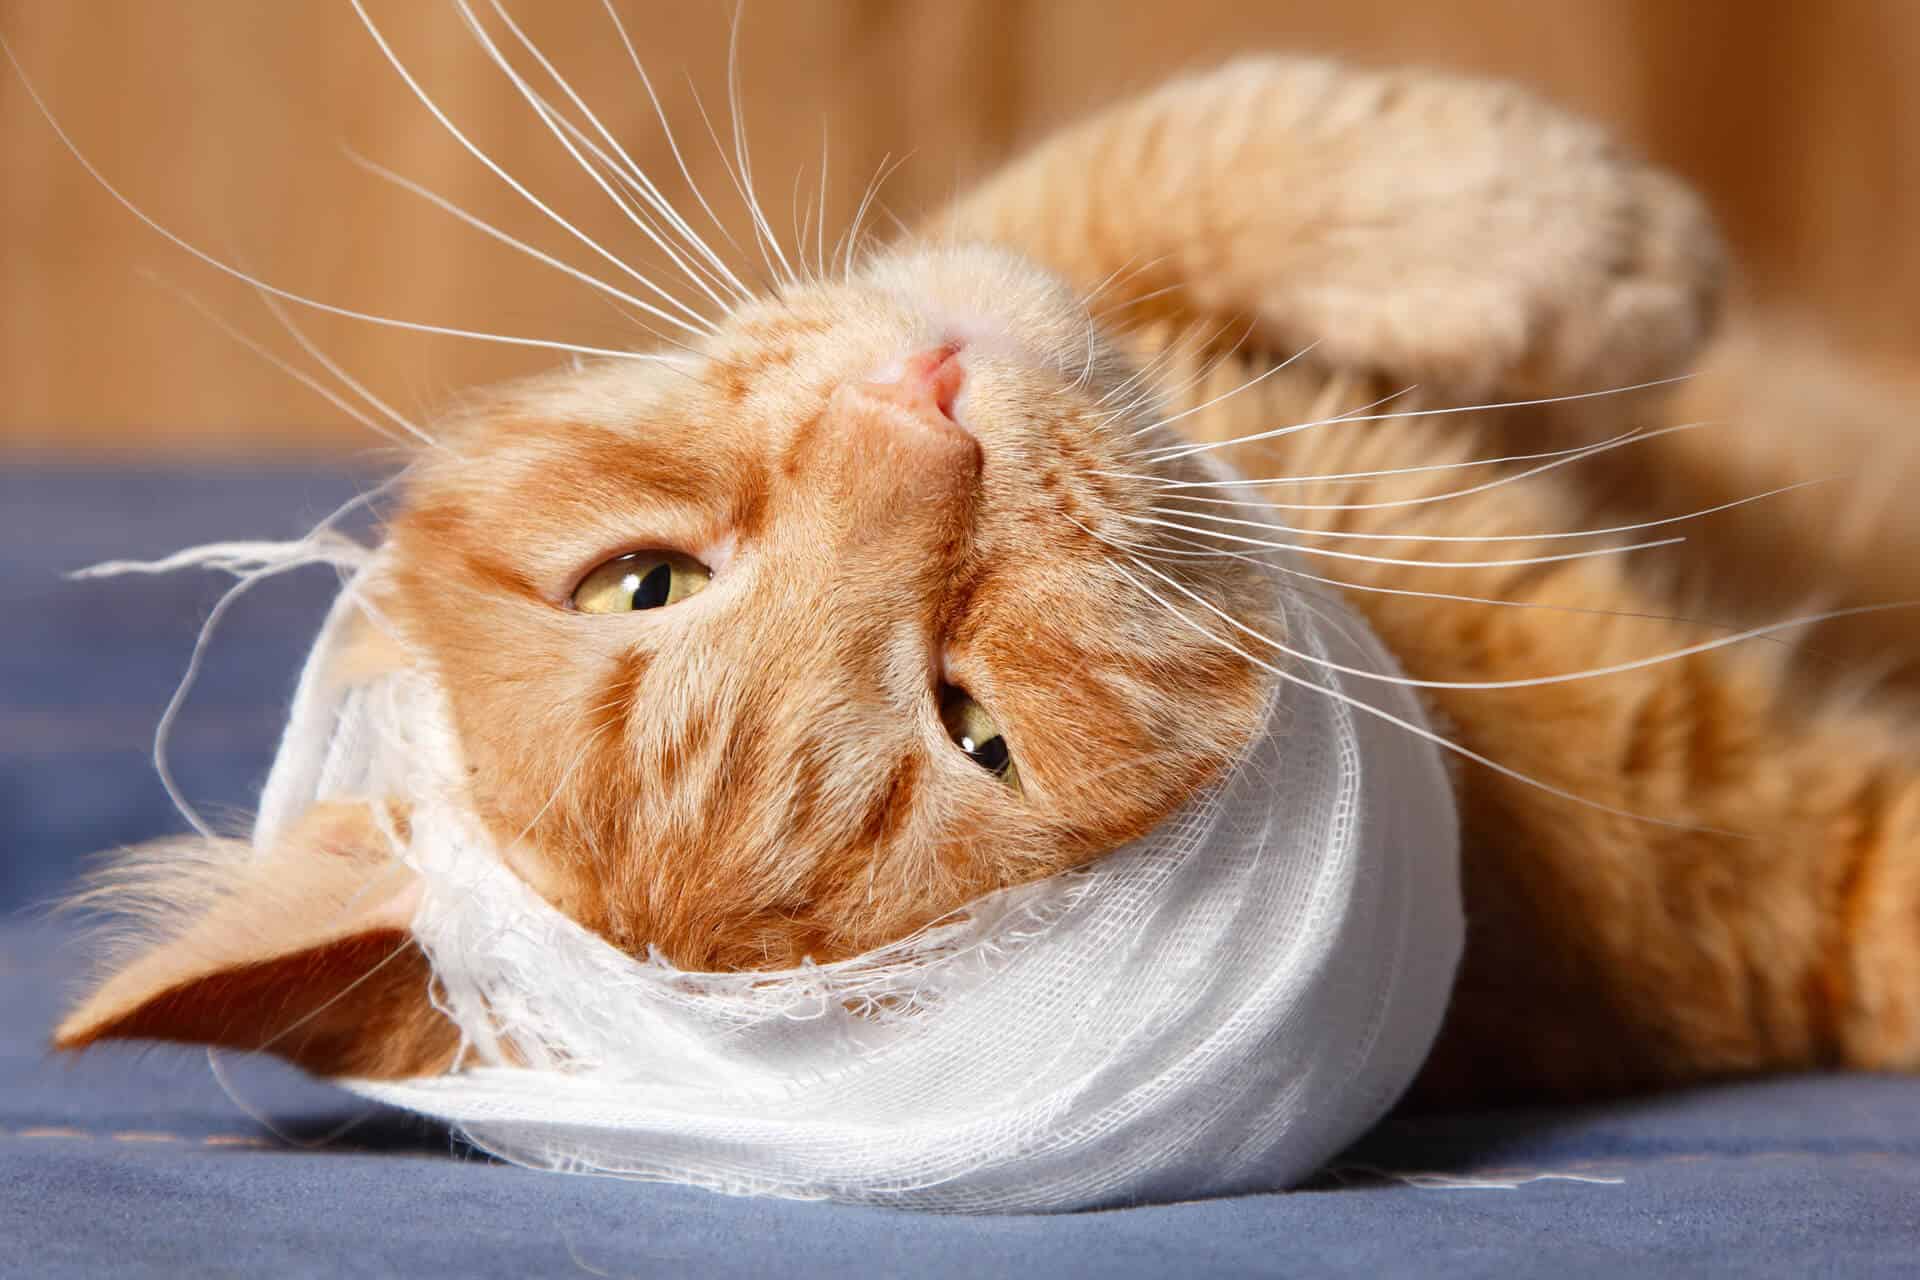 come curare le ferite al gatto - bendaggio